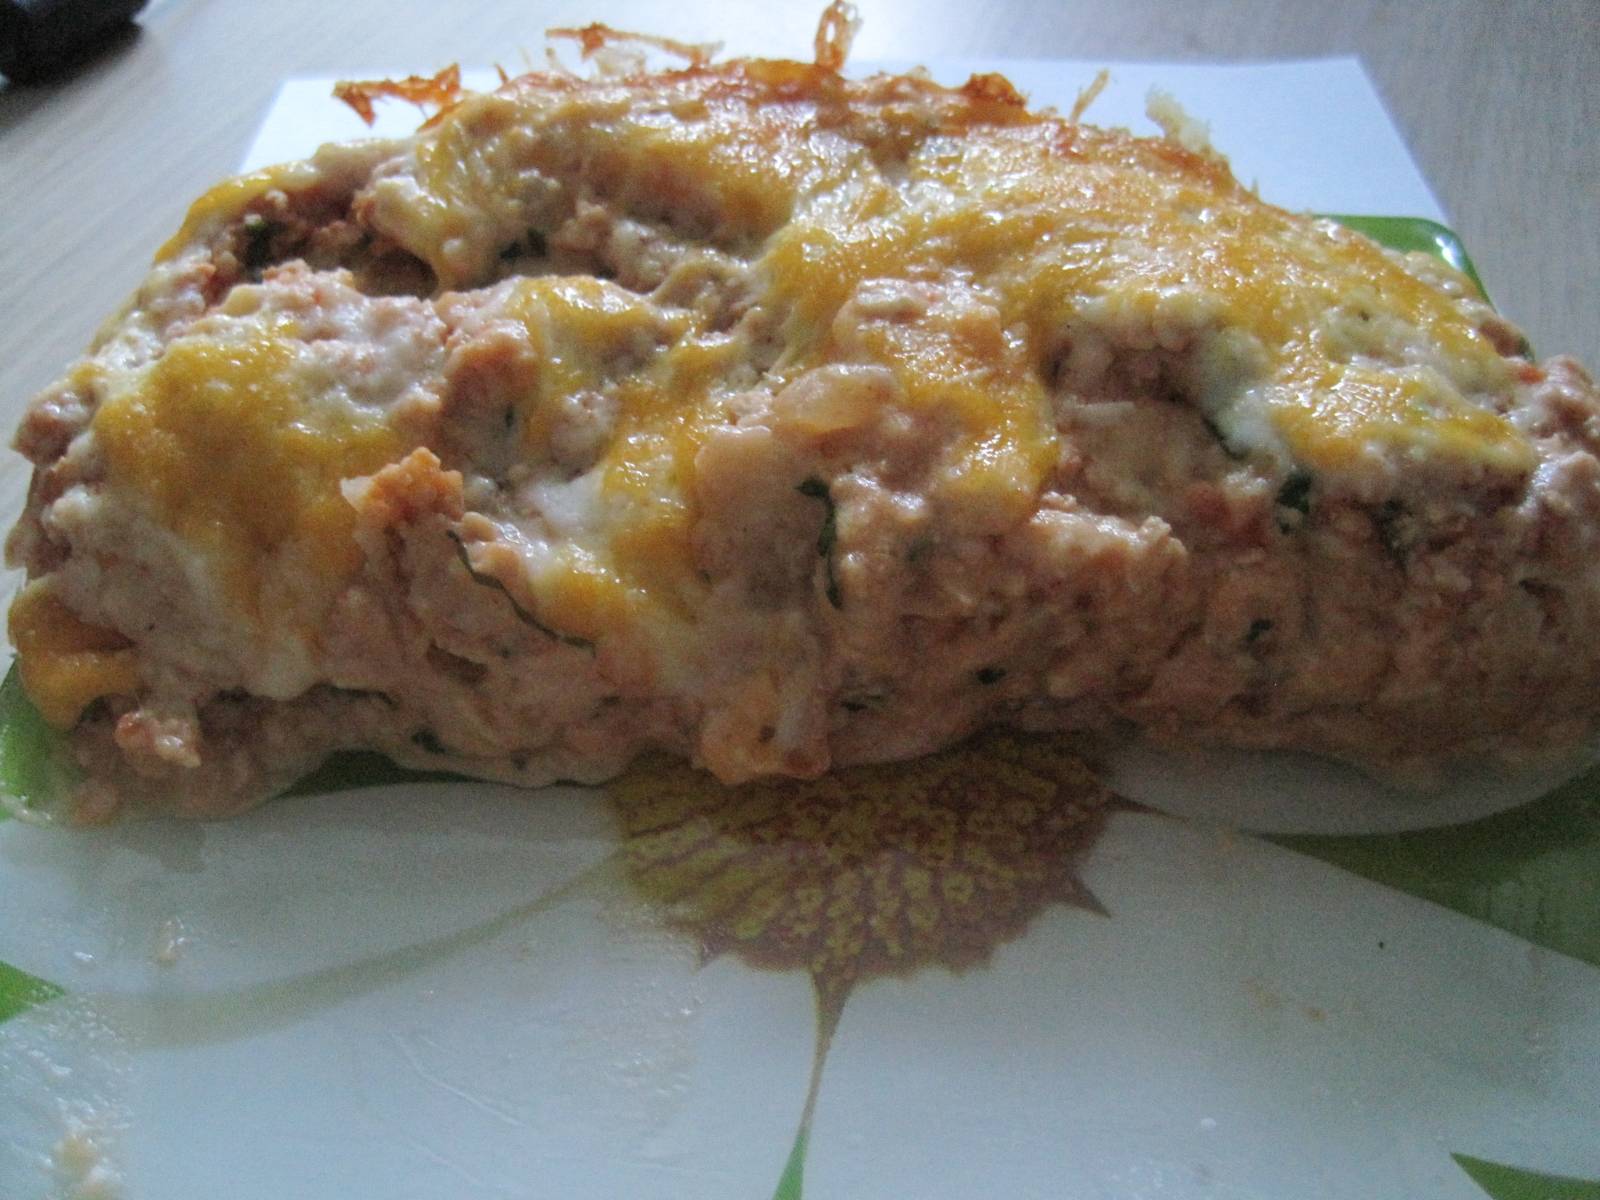 Lasagne z Mięsem i Pieczarkami (Multicuisine DeLonghi)